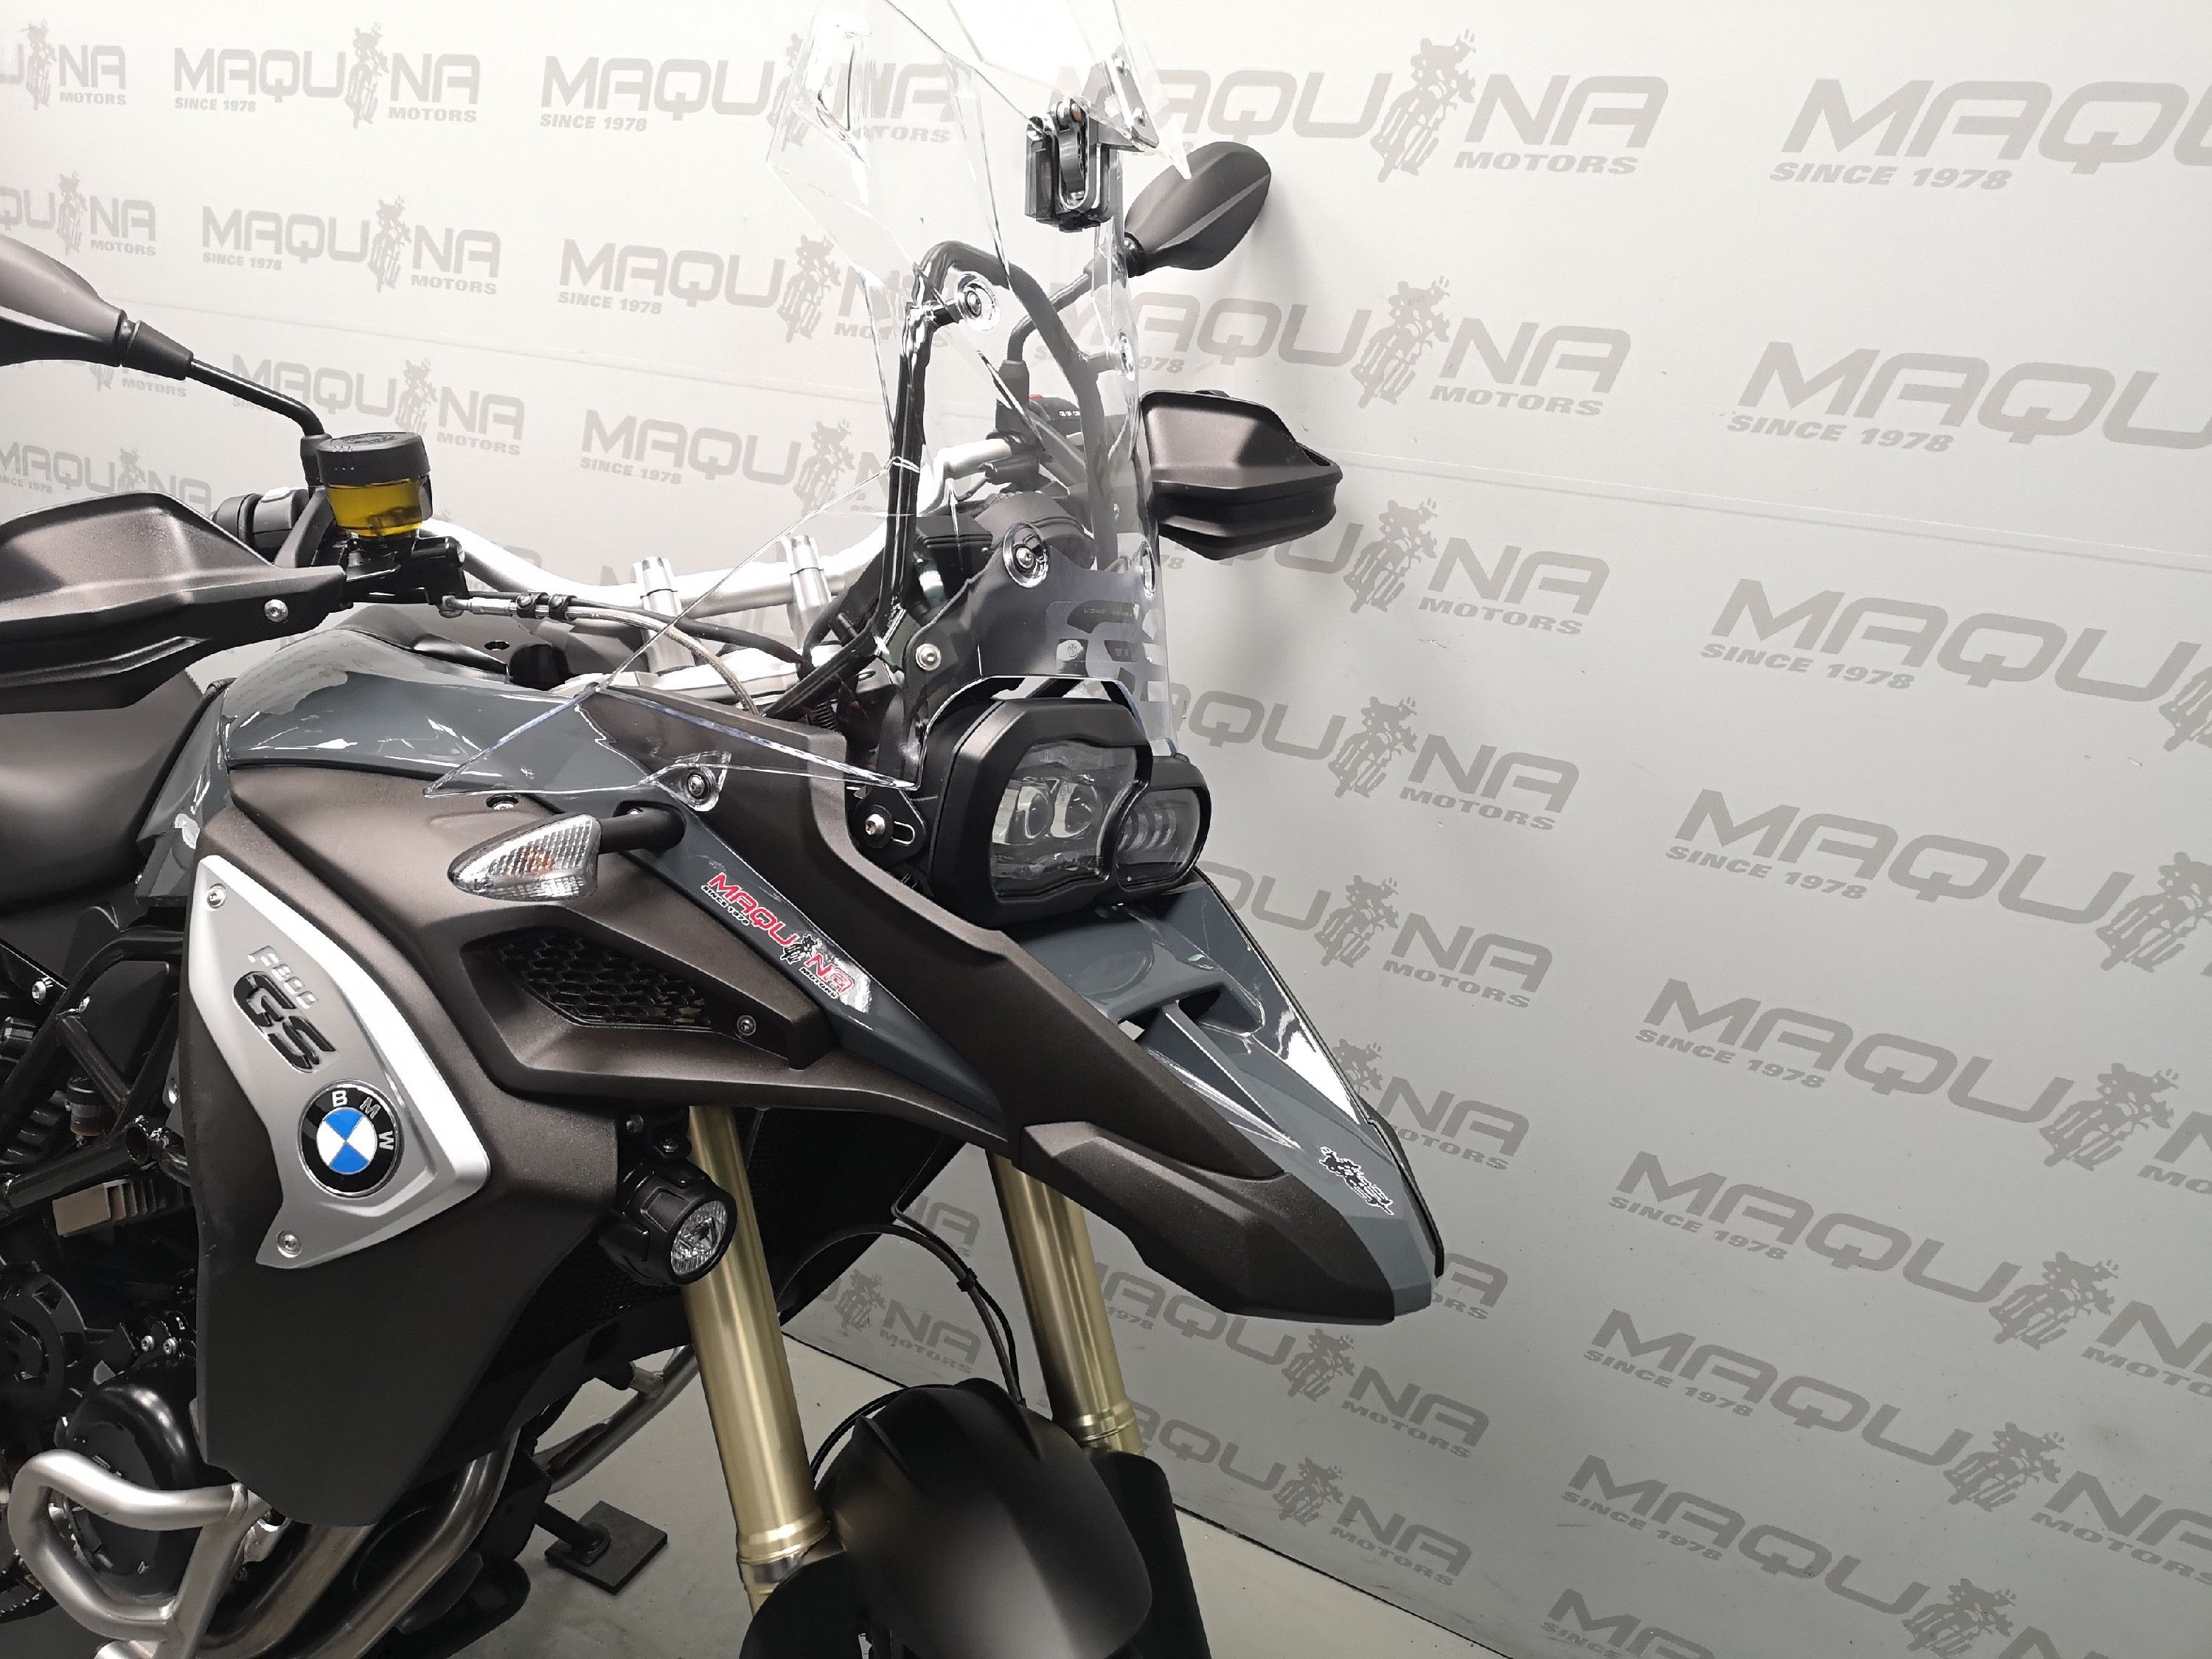 BMW F 800 GS – Maquina Motors motos